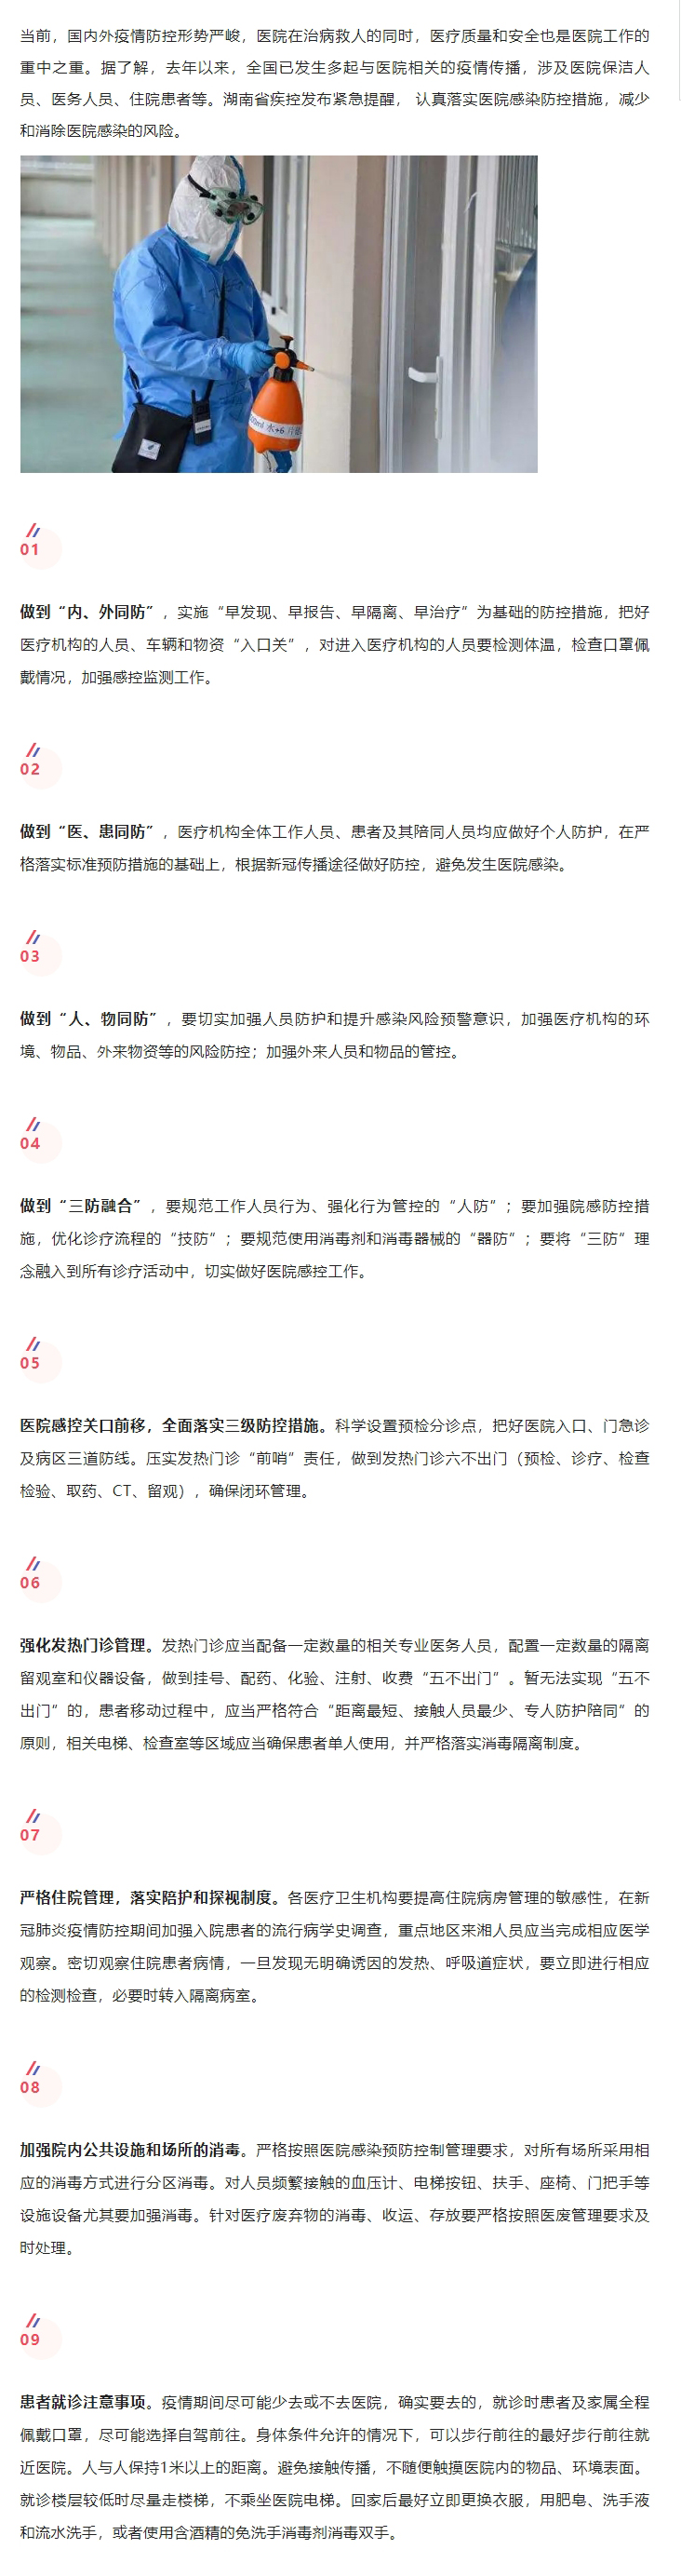 4.7湖南省疾控发布提醒，做好院感防控，减少和消除隐患.jpg